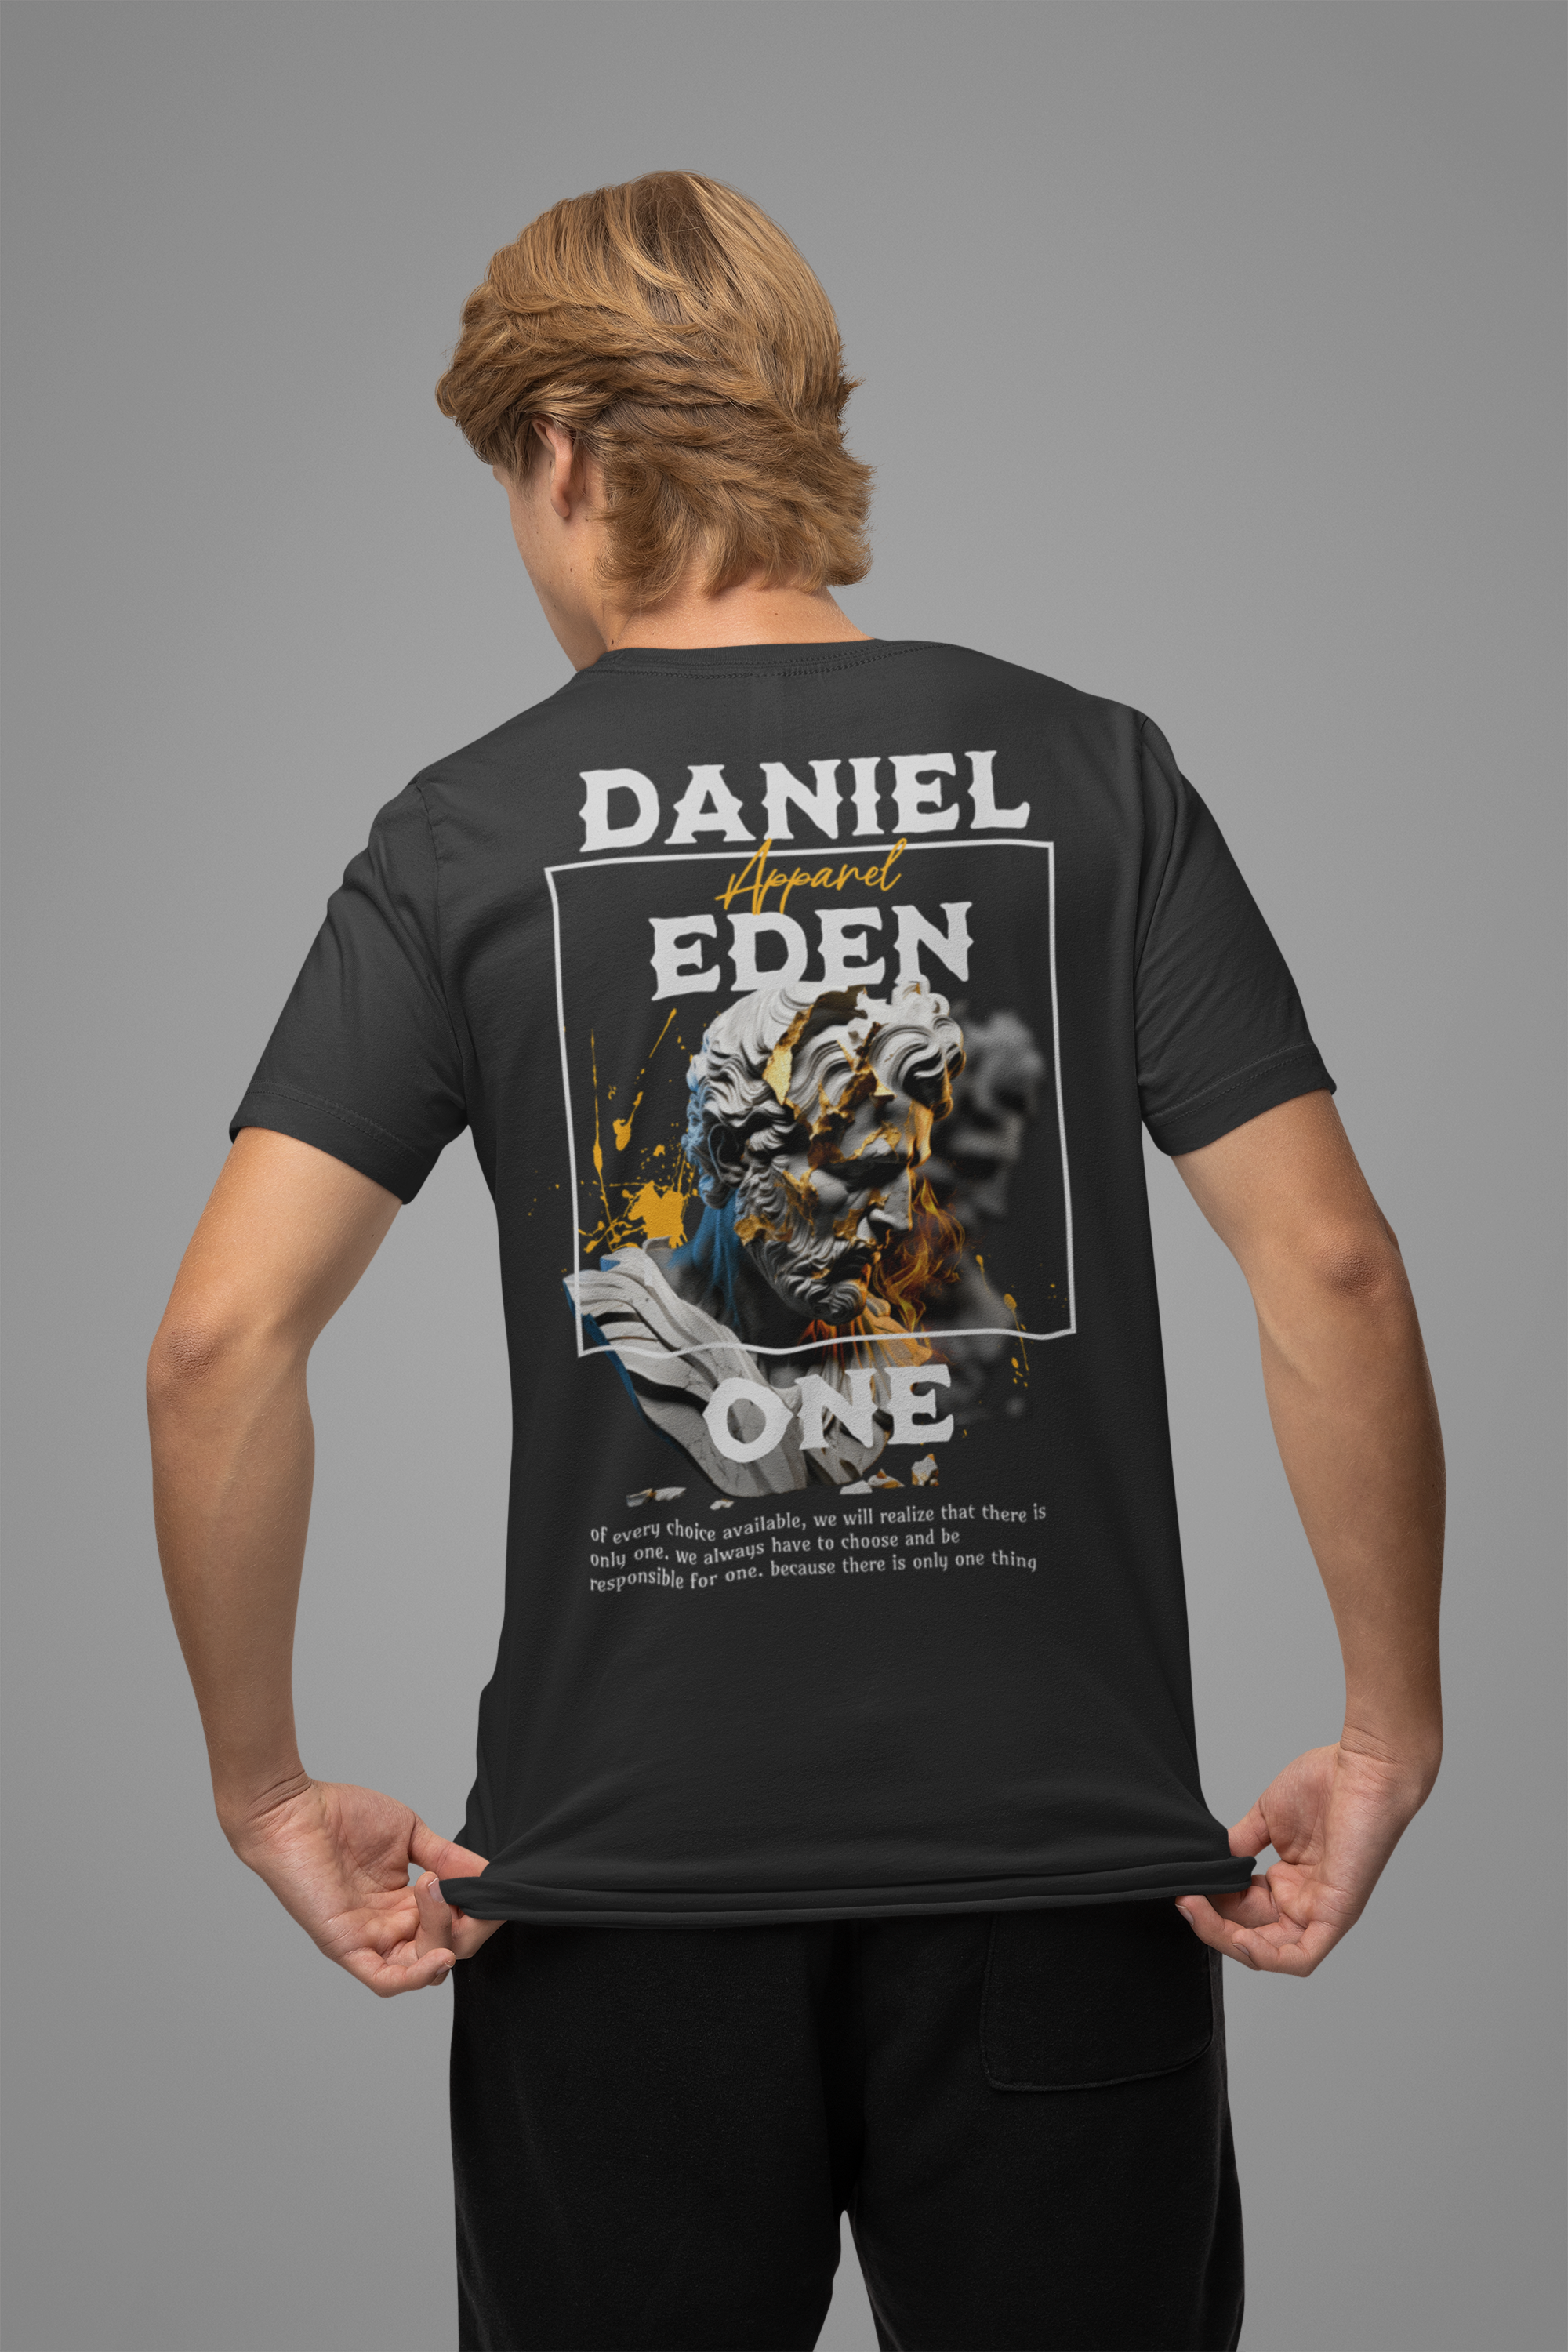 DanielEden Premium T-shirt " ONE "